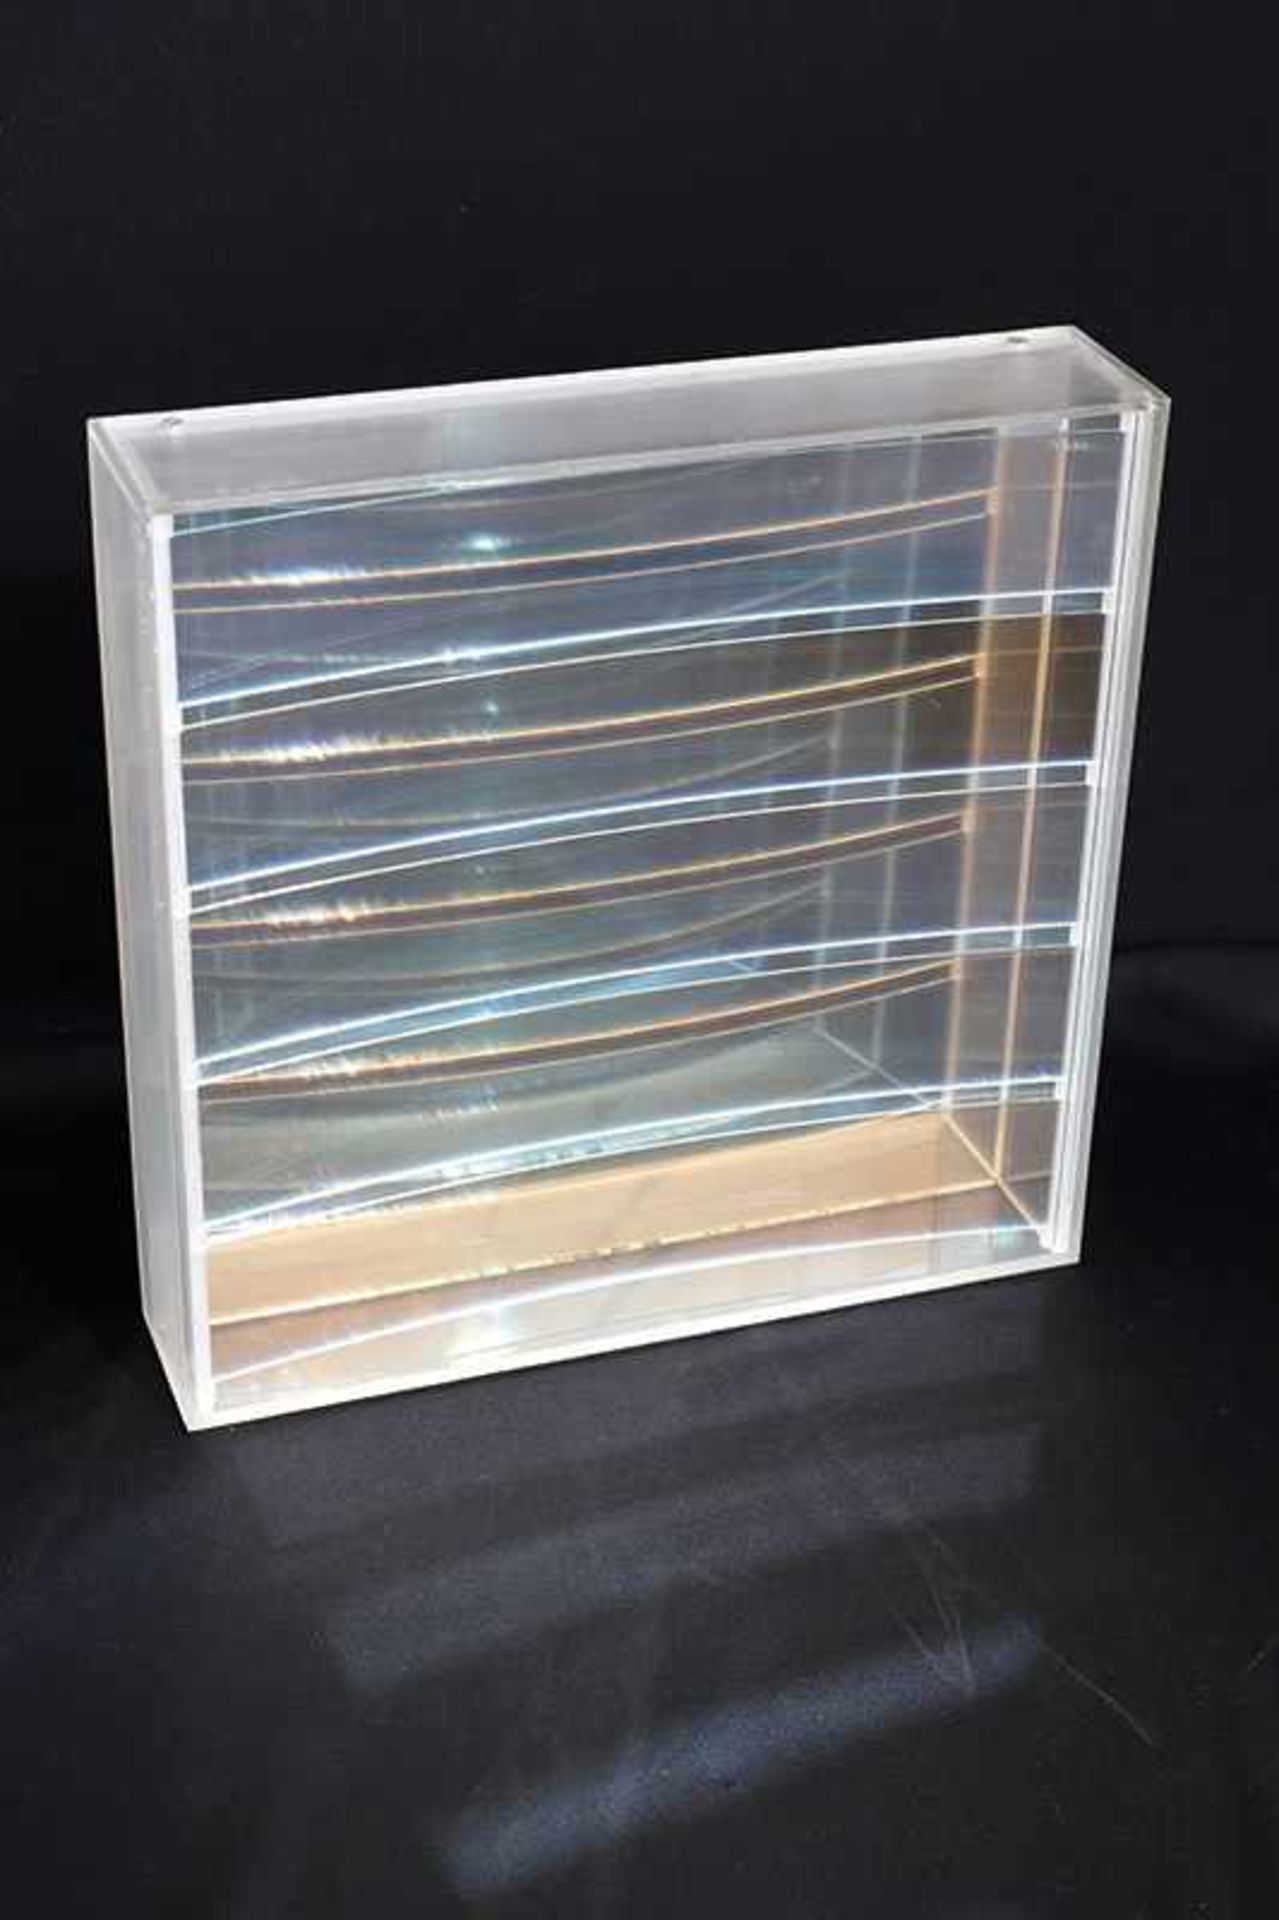 Ohne TitelAdolf Luther* (1912-1990)1974Acrylglas, Glas. Quadratischer Objektkasten aus Acrylglas mit